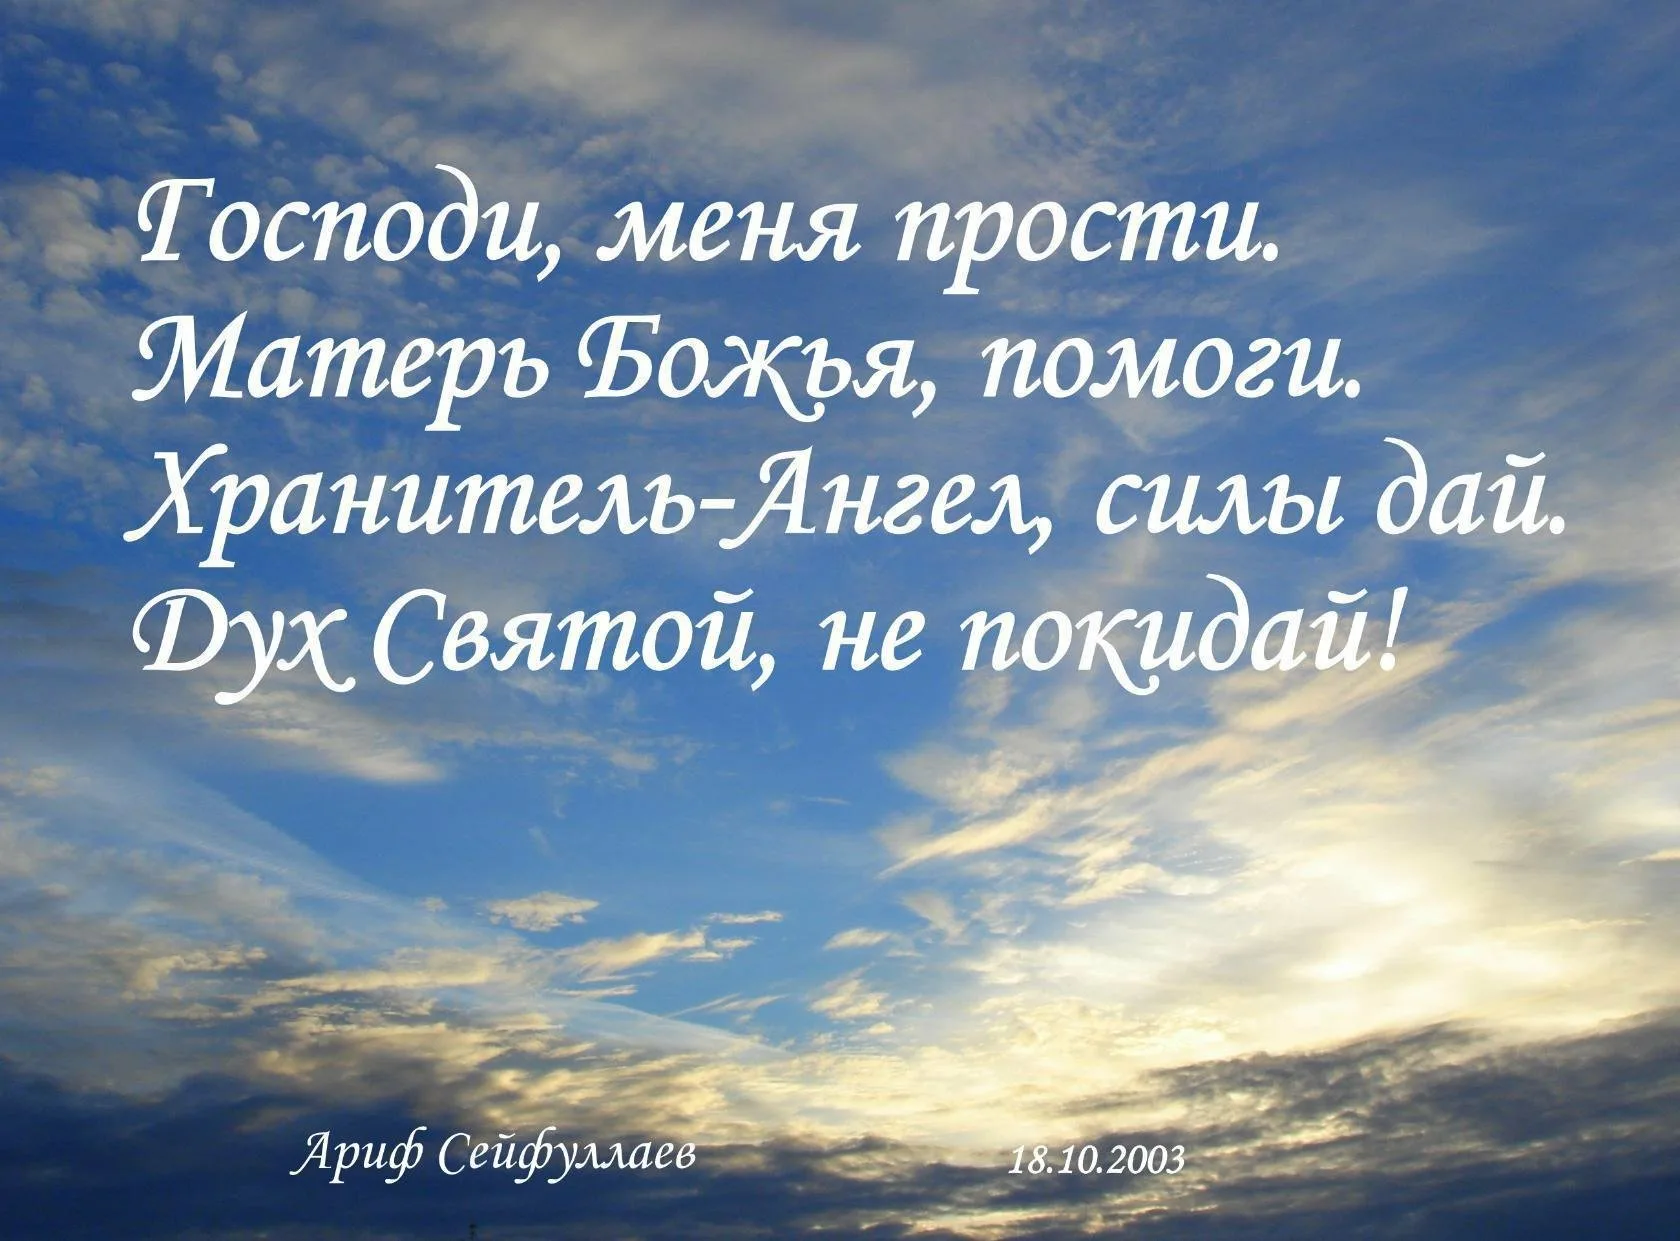 Фото Православное пожелание доброго утра #61